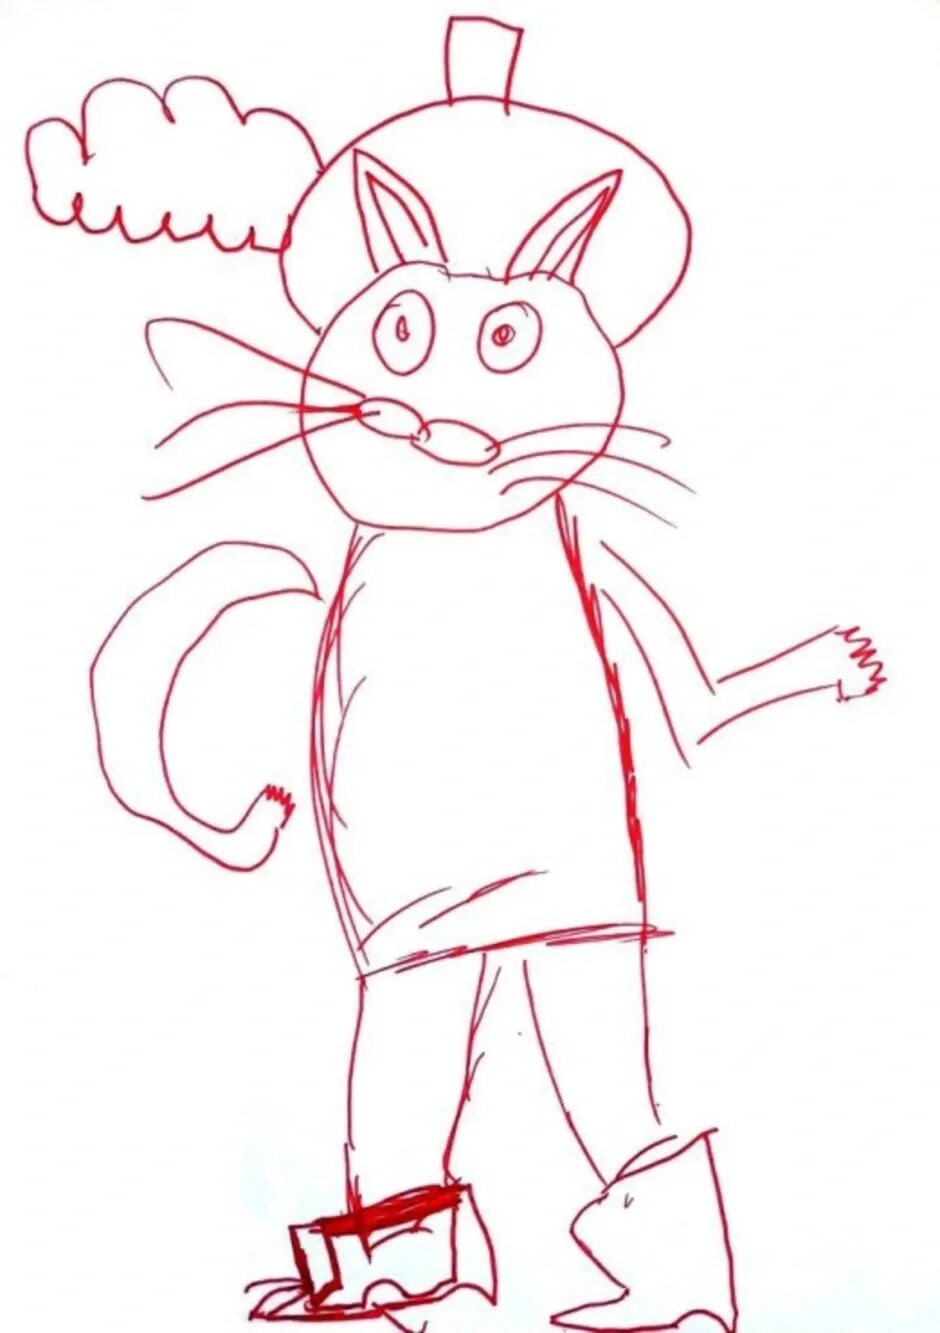 Кот в сапогах рисунок карандашом. Поэтапное рисование кота в сапогах. Пошаговый рисунок кота в сапогах. Рисуем кота в сапогах пошагово.